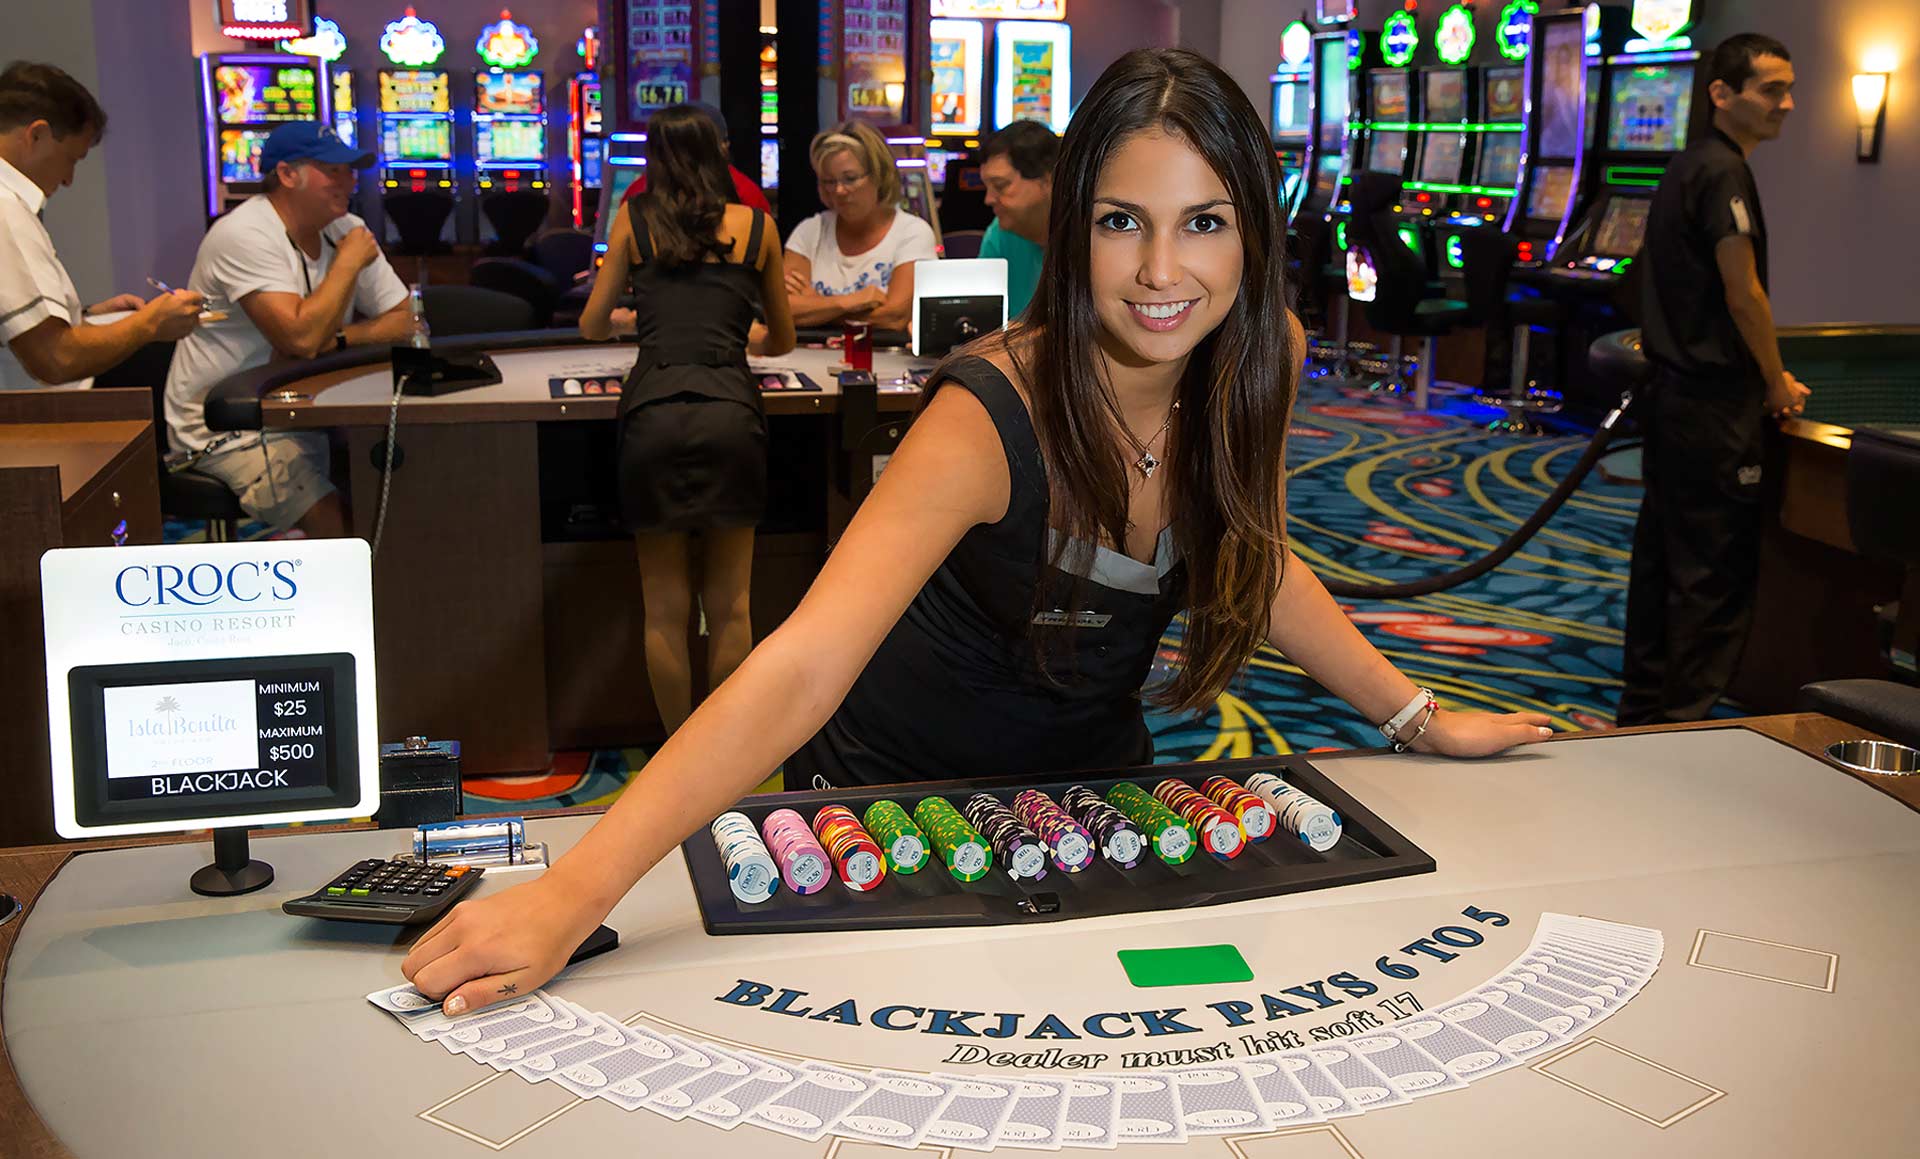 Casino rica скачать программу для взлома онлайн казино